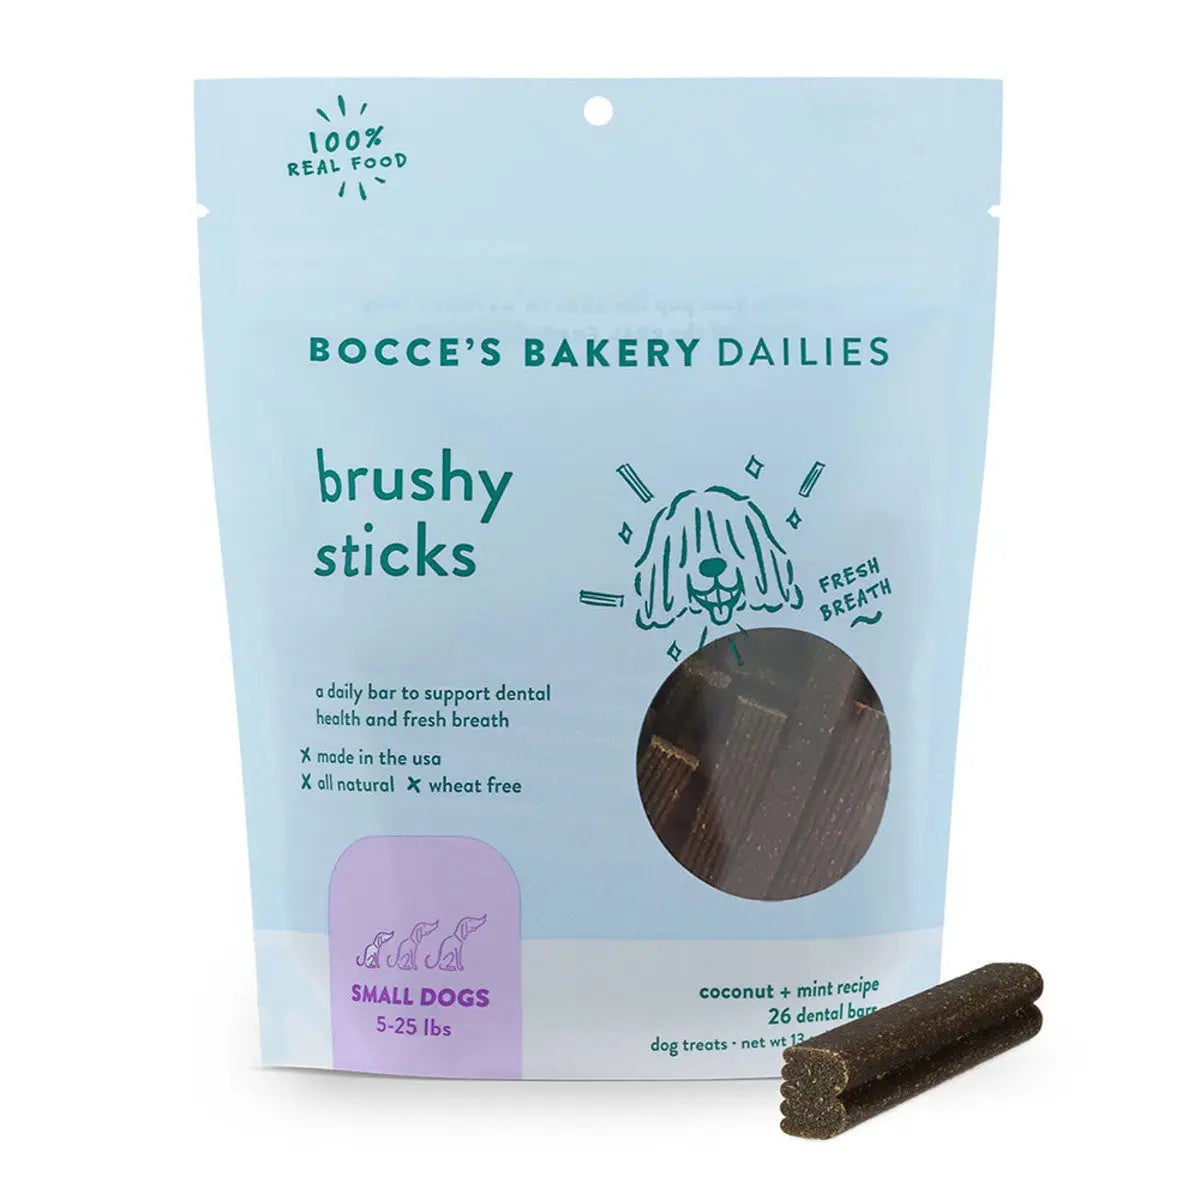 Bocce's Bakery Dailies 13oz Brushy Sticks Small Dog Dental Treats Bocce's Bakery